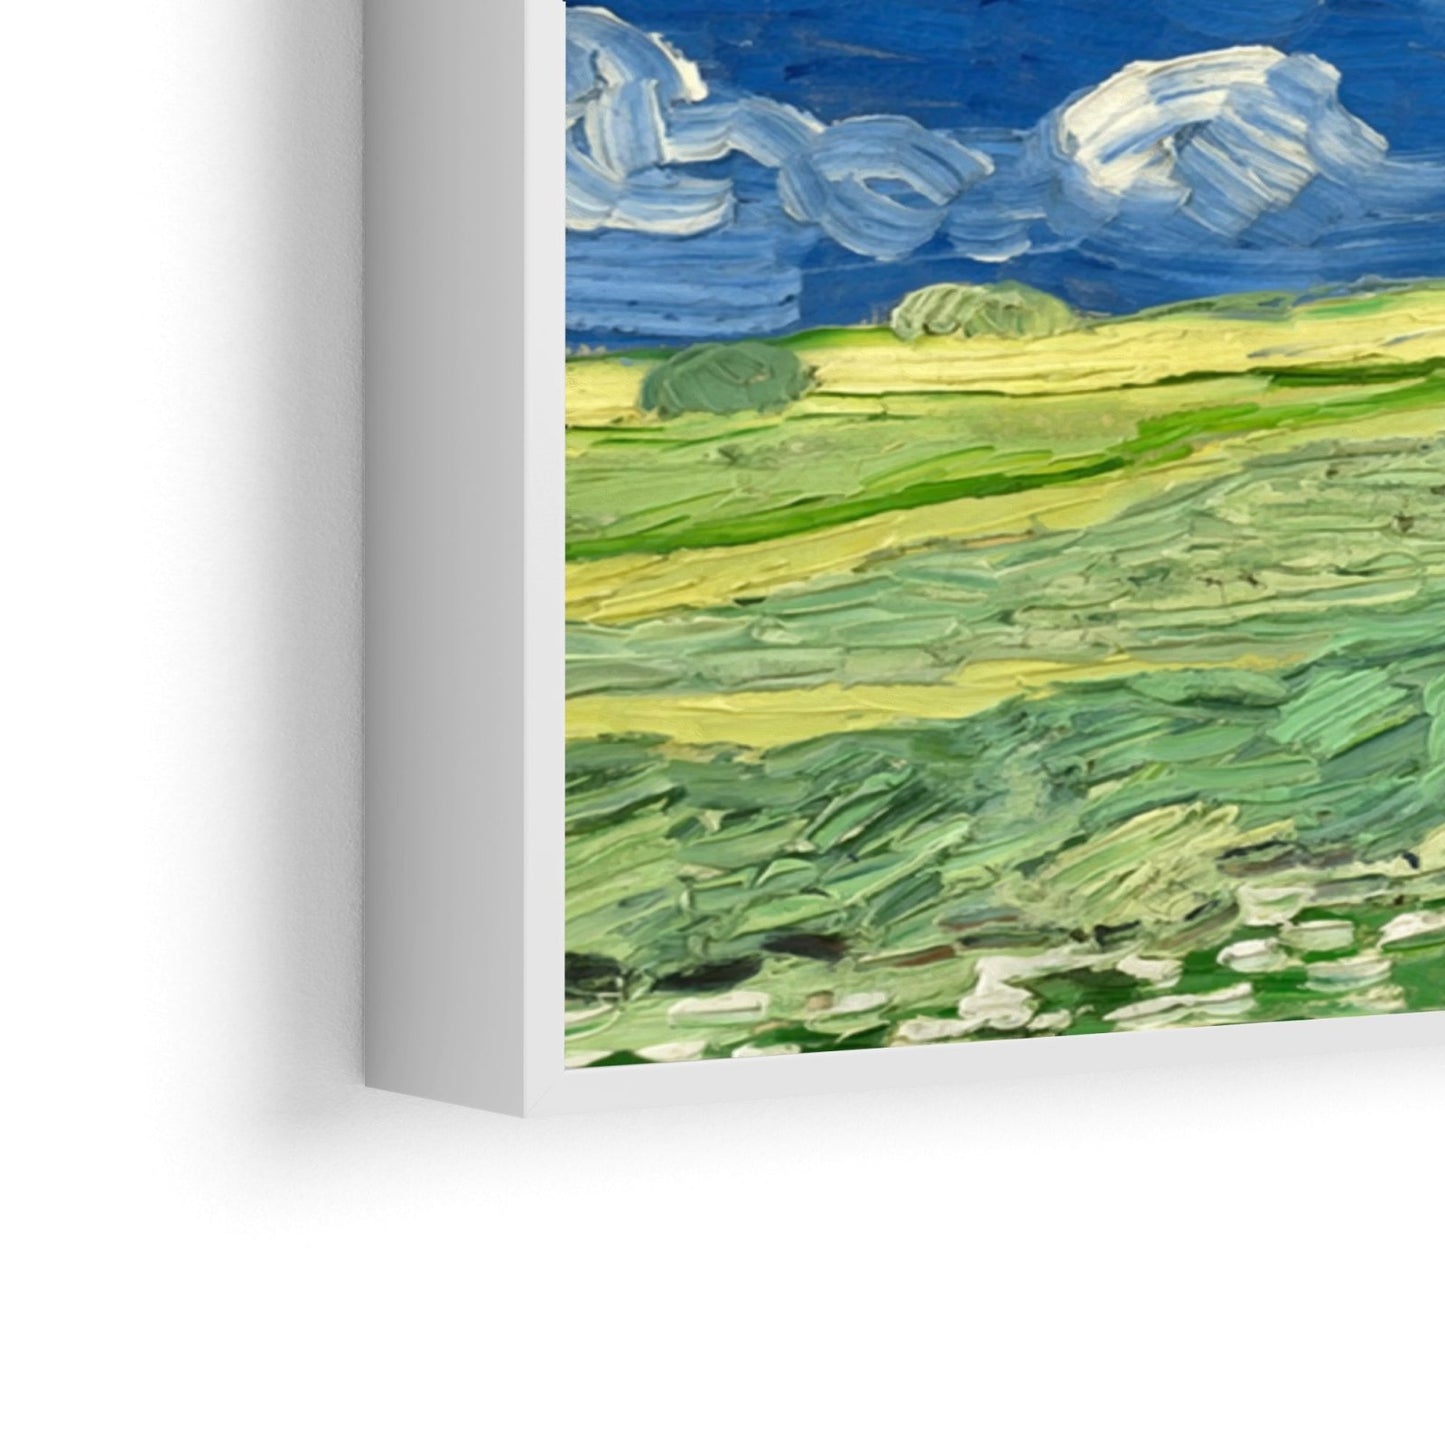 Weizenfelder unter Gewitterwolken, Vincent Van Gogh